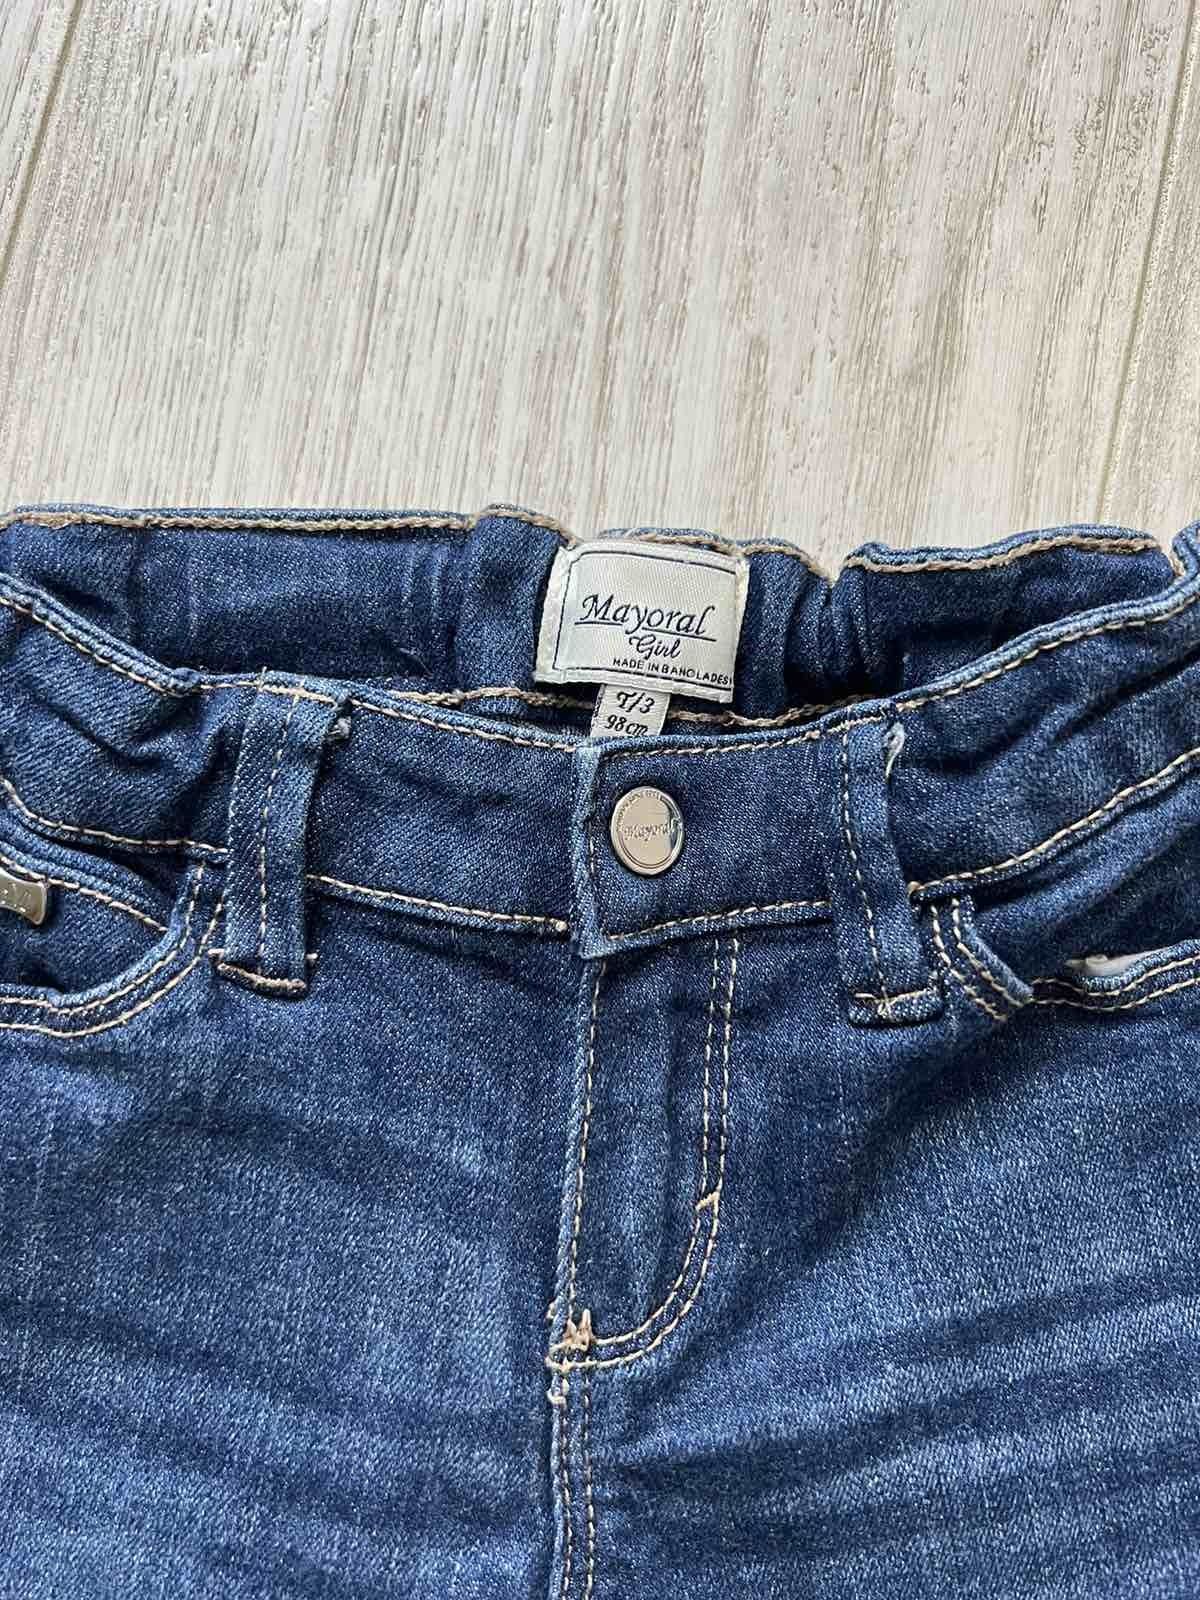 Штаны джинсы для девочки на 3 года Mayoral